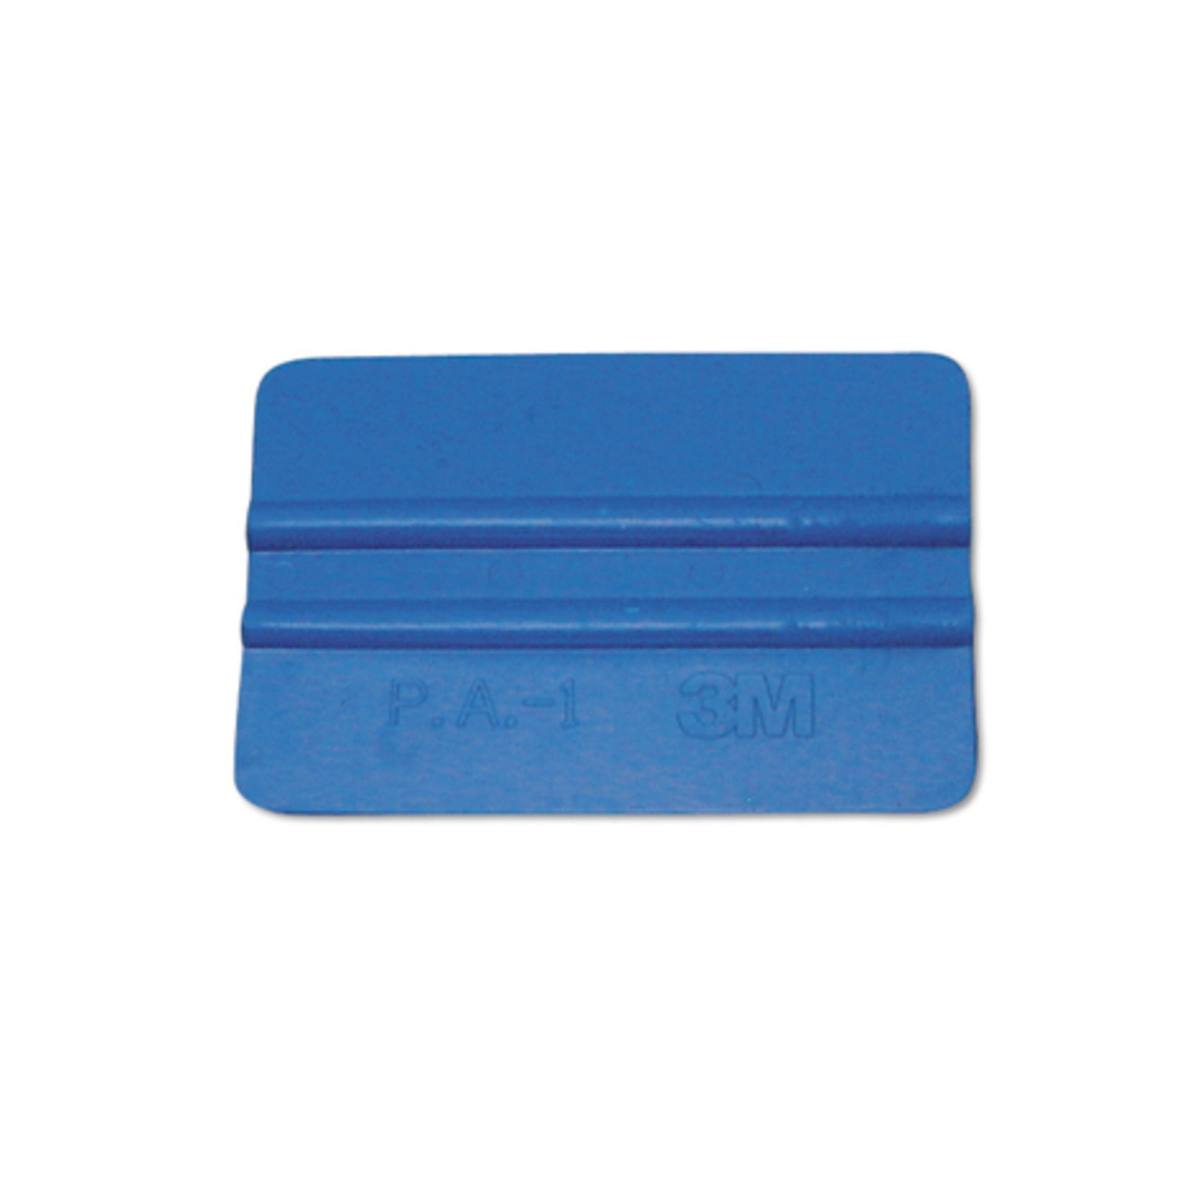 Rasqueta de plástico 3M, azul claro, suave, 100mmx70mm, P.A.-1